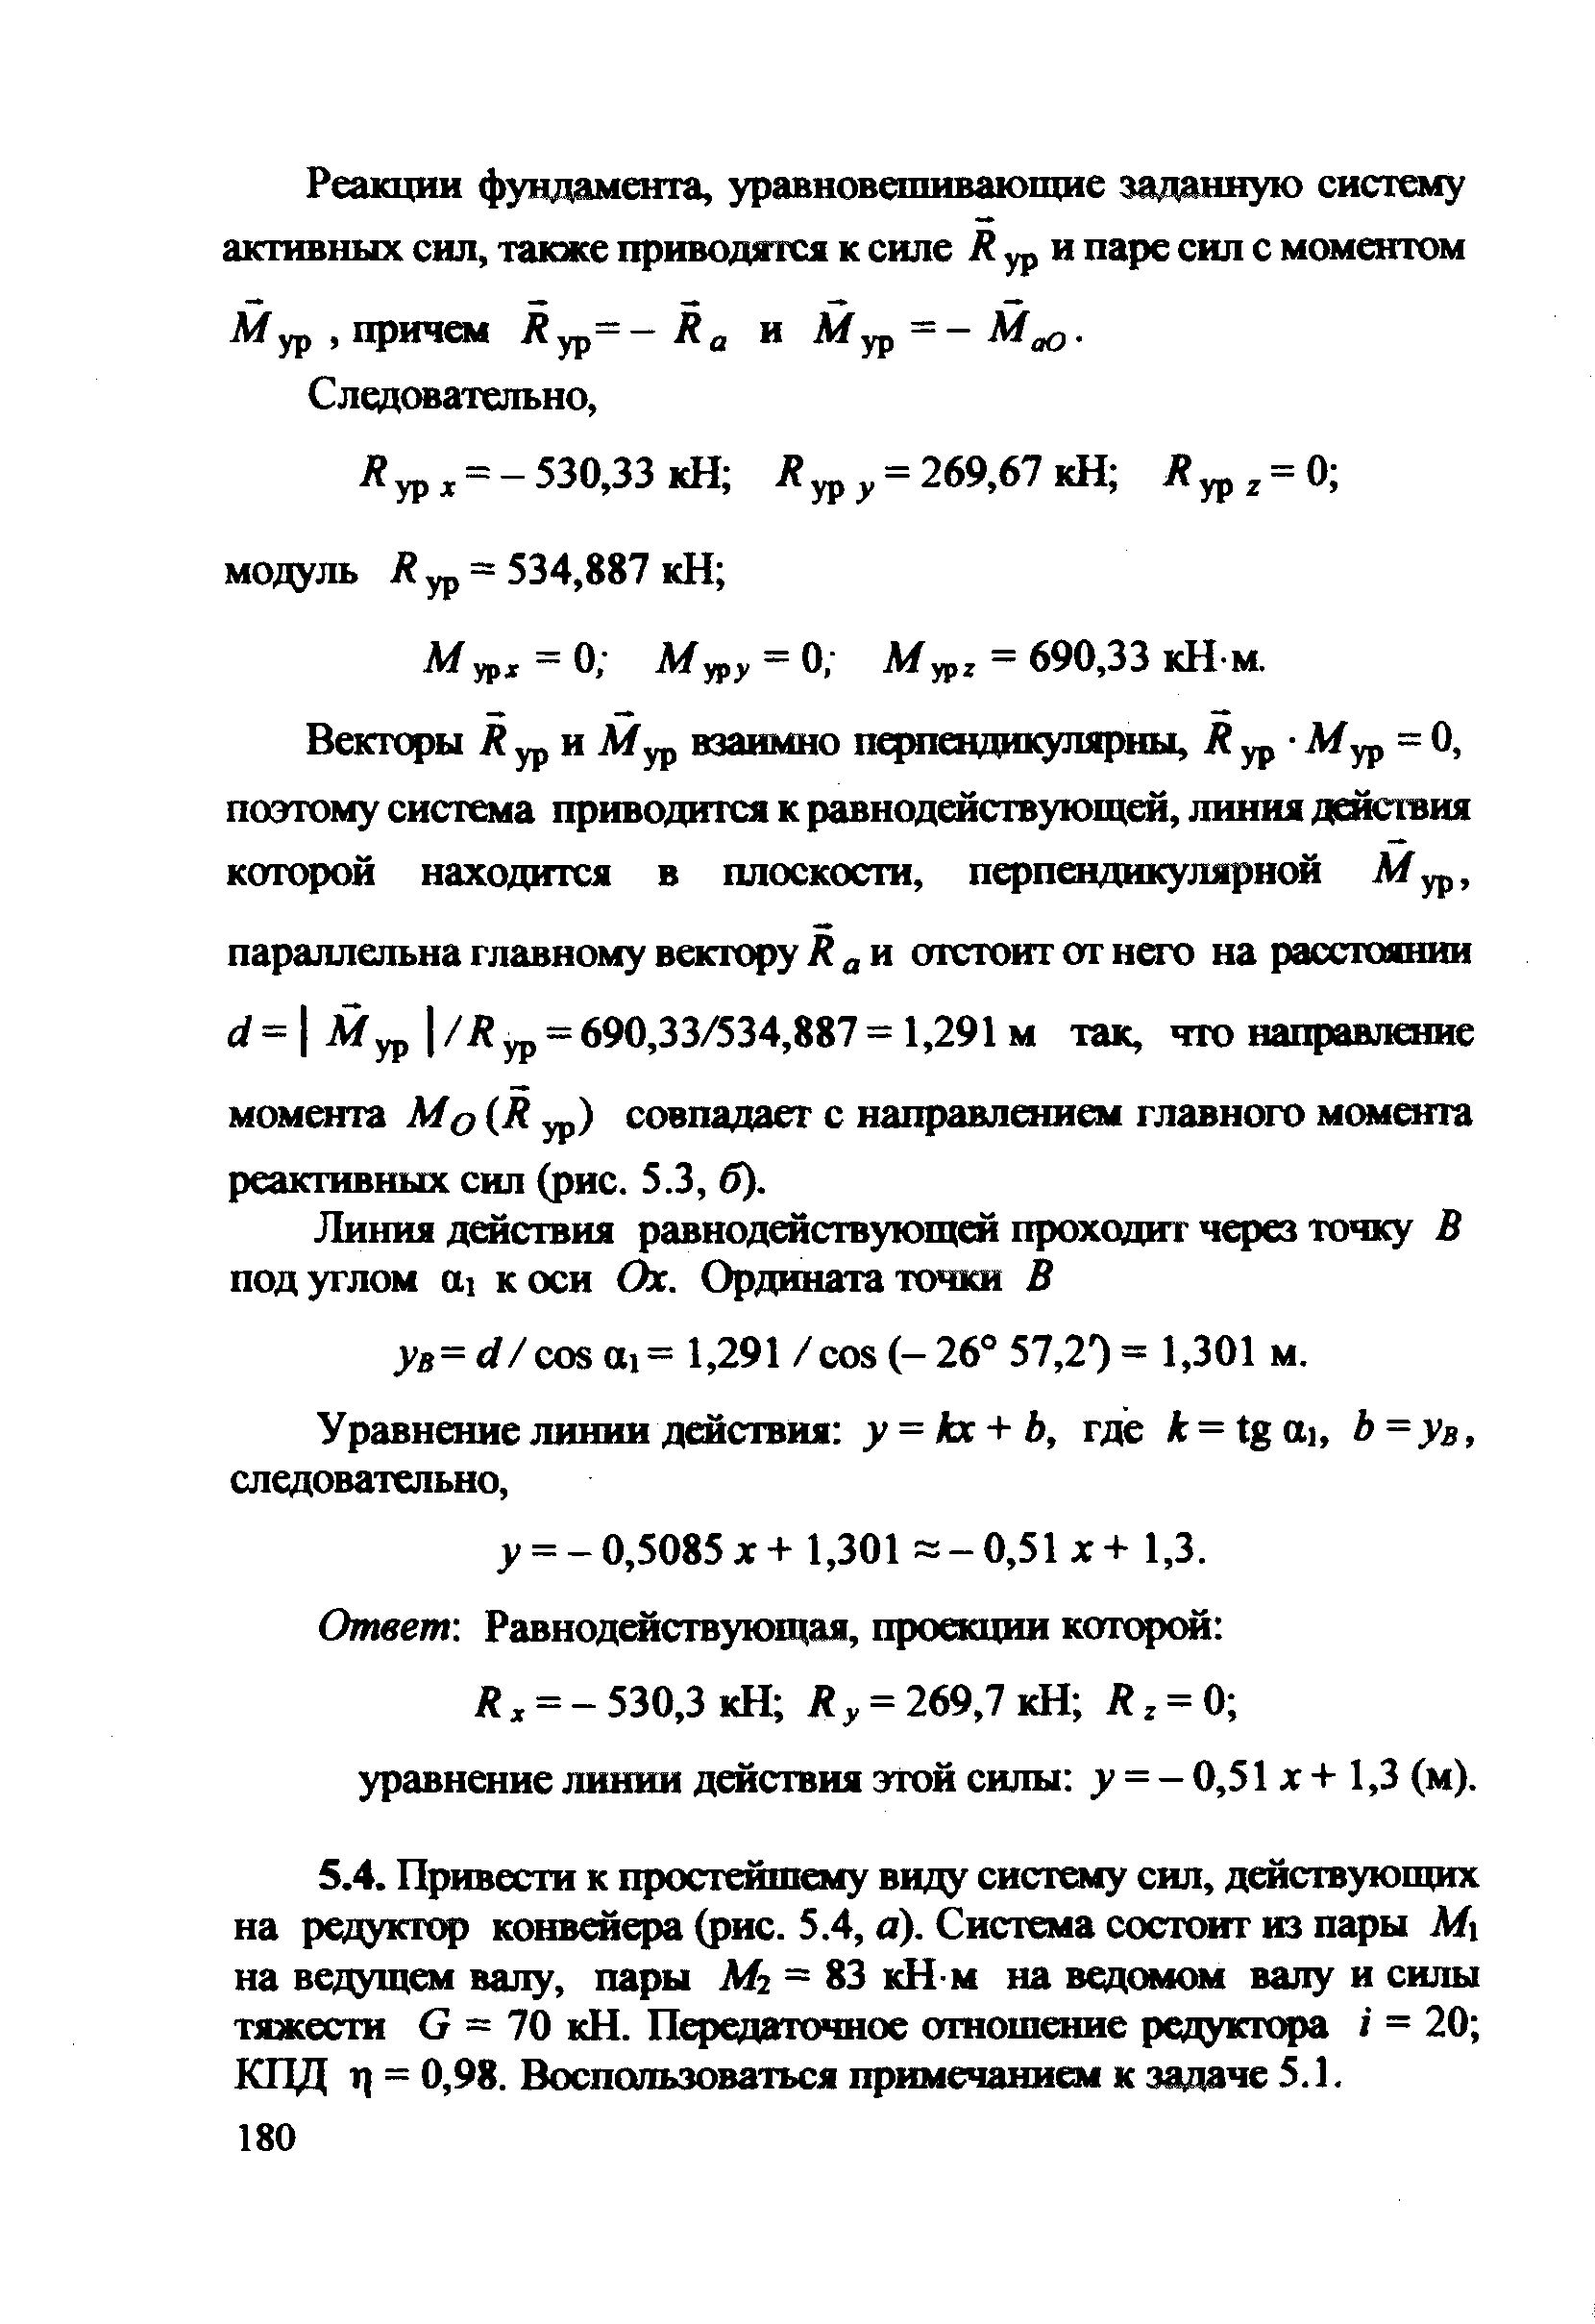 А/урх = 0 Муру = 0 Мур = 690,33 кН м.
